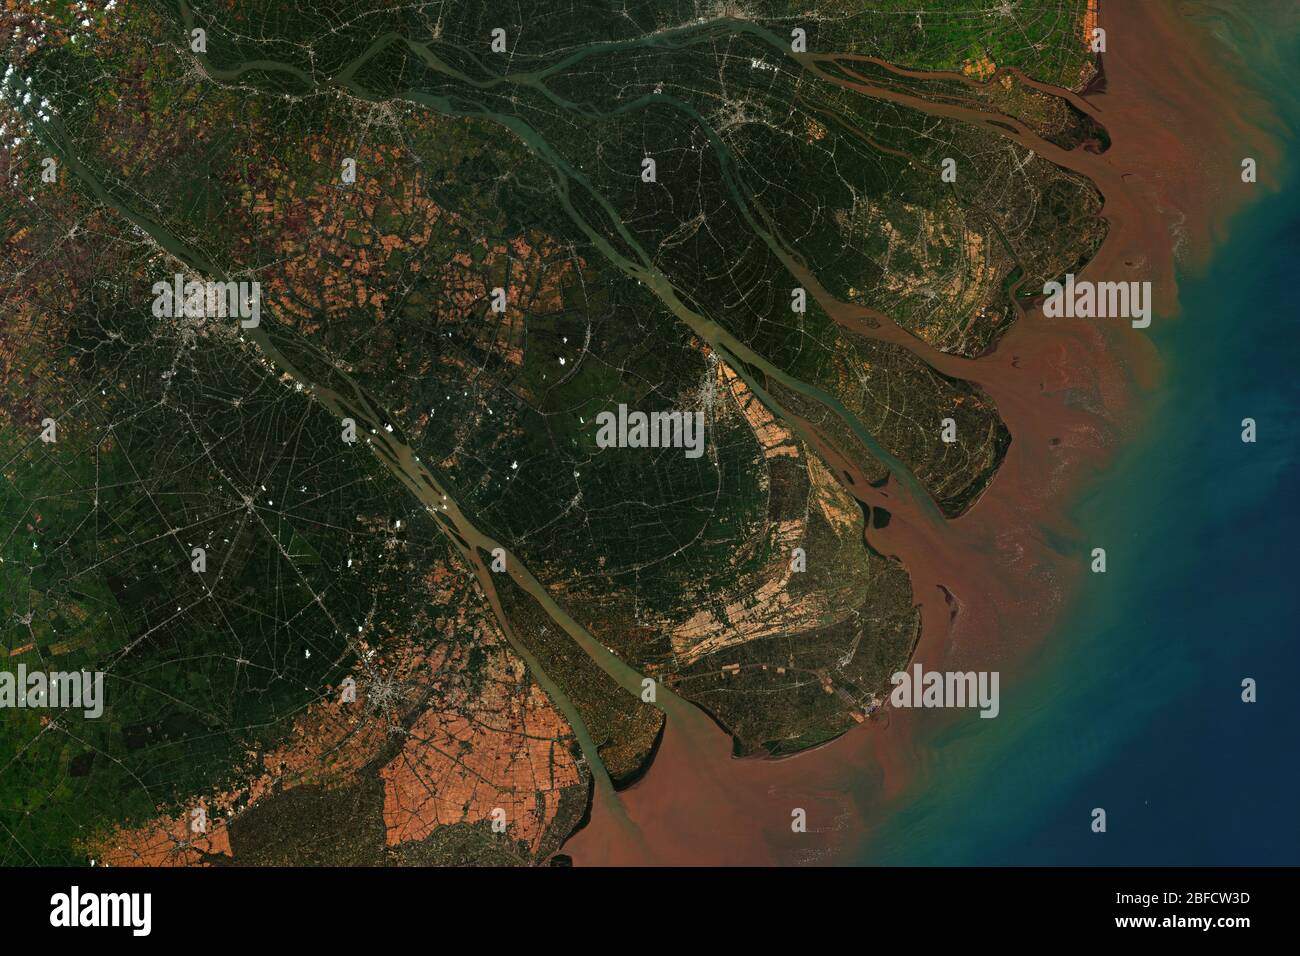 Il delta del fiume Mekong in Vietnam, dove il fiume Mekong si avvicina e si svuota nel Mar Cinese Meridionale, visto dallo spazio, contiene Copernico modificato Foto Stock